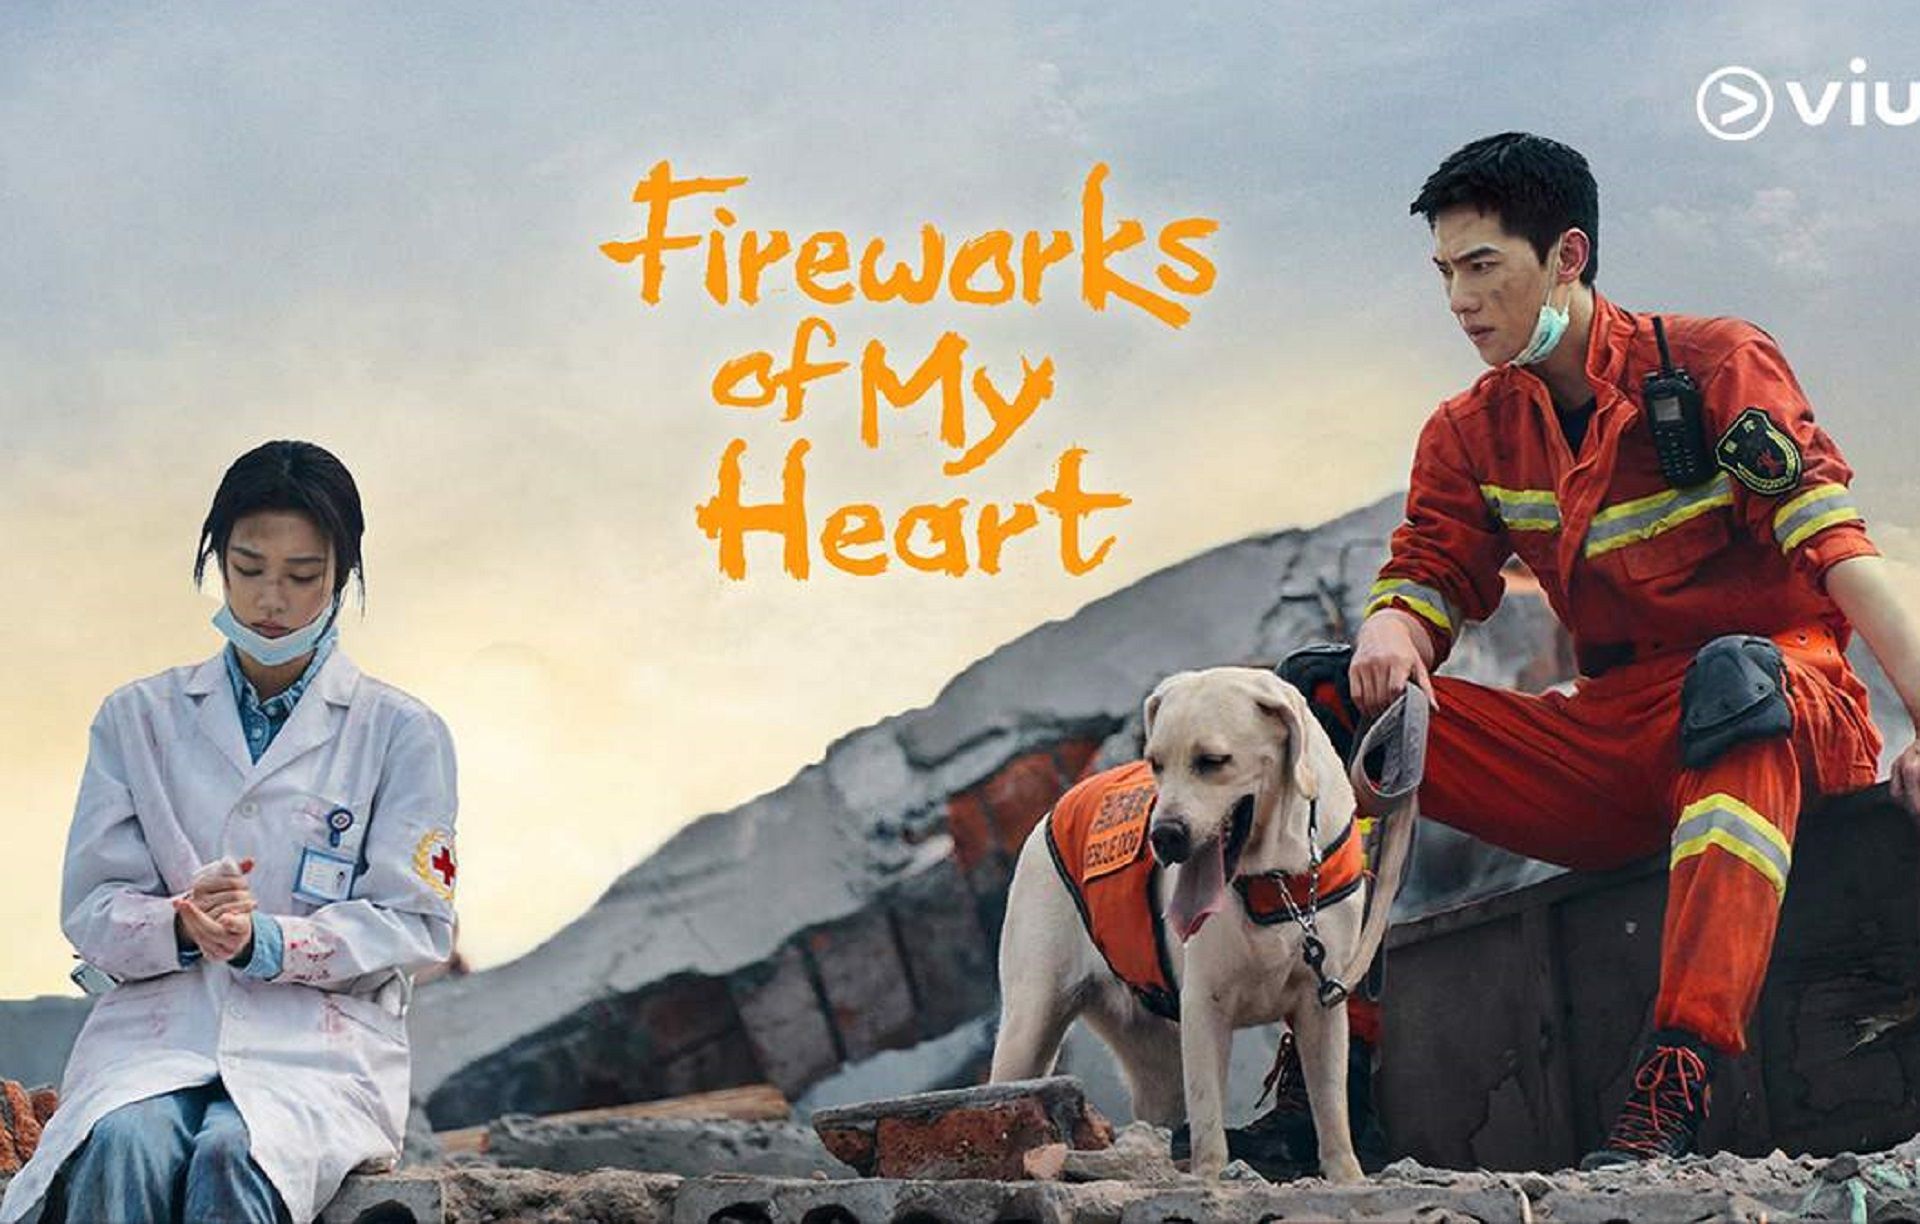 Fireworks of My Heart jadi salah satu rekomendasi drama di Viu.